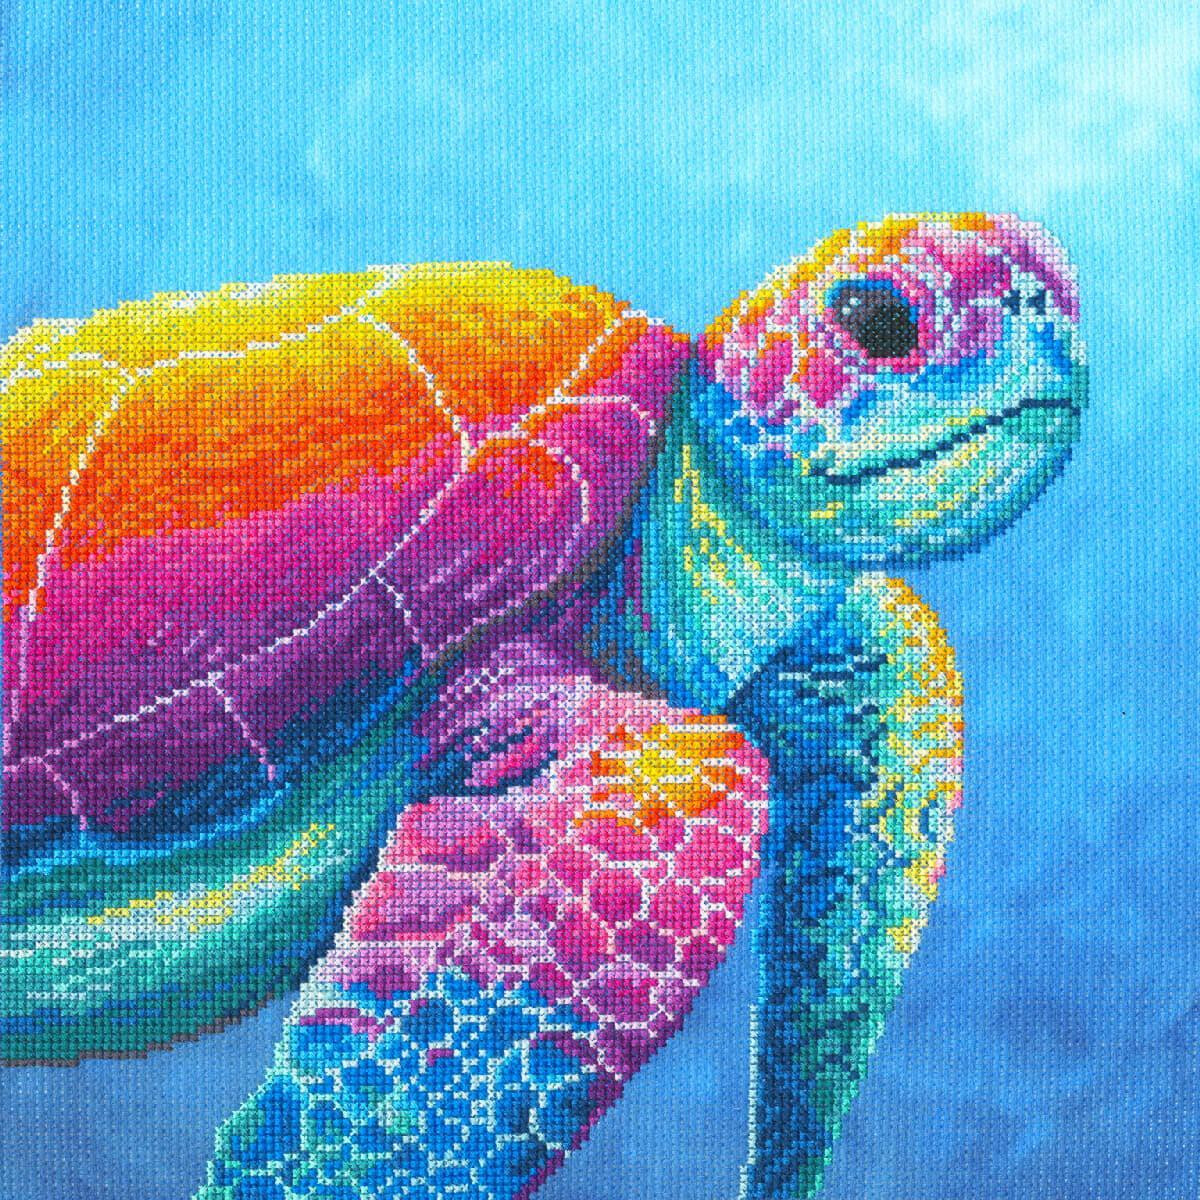 Una vivace illustrazione di una tartaruga marina su uno...